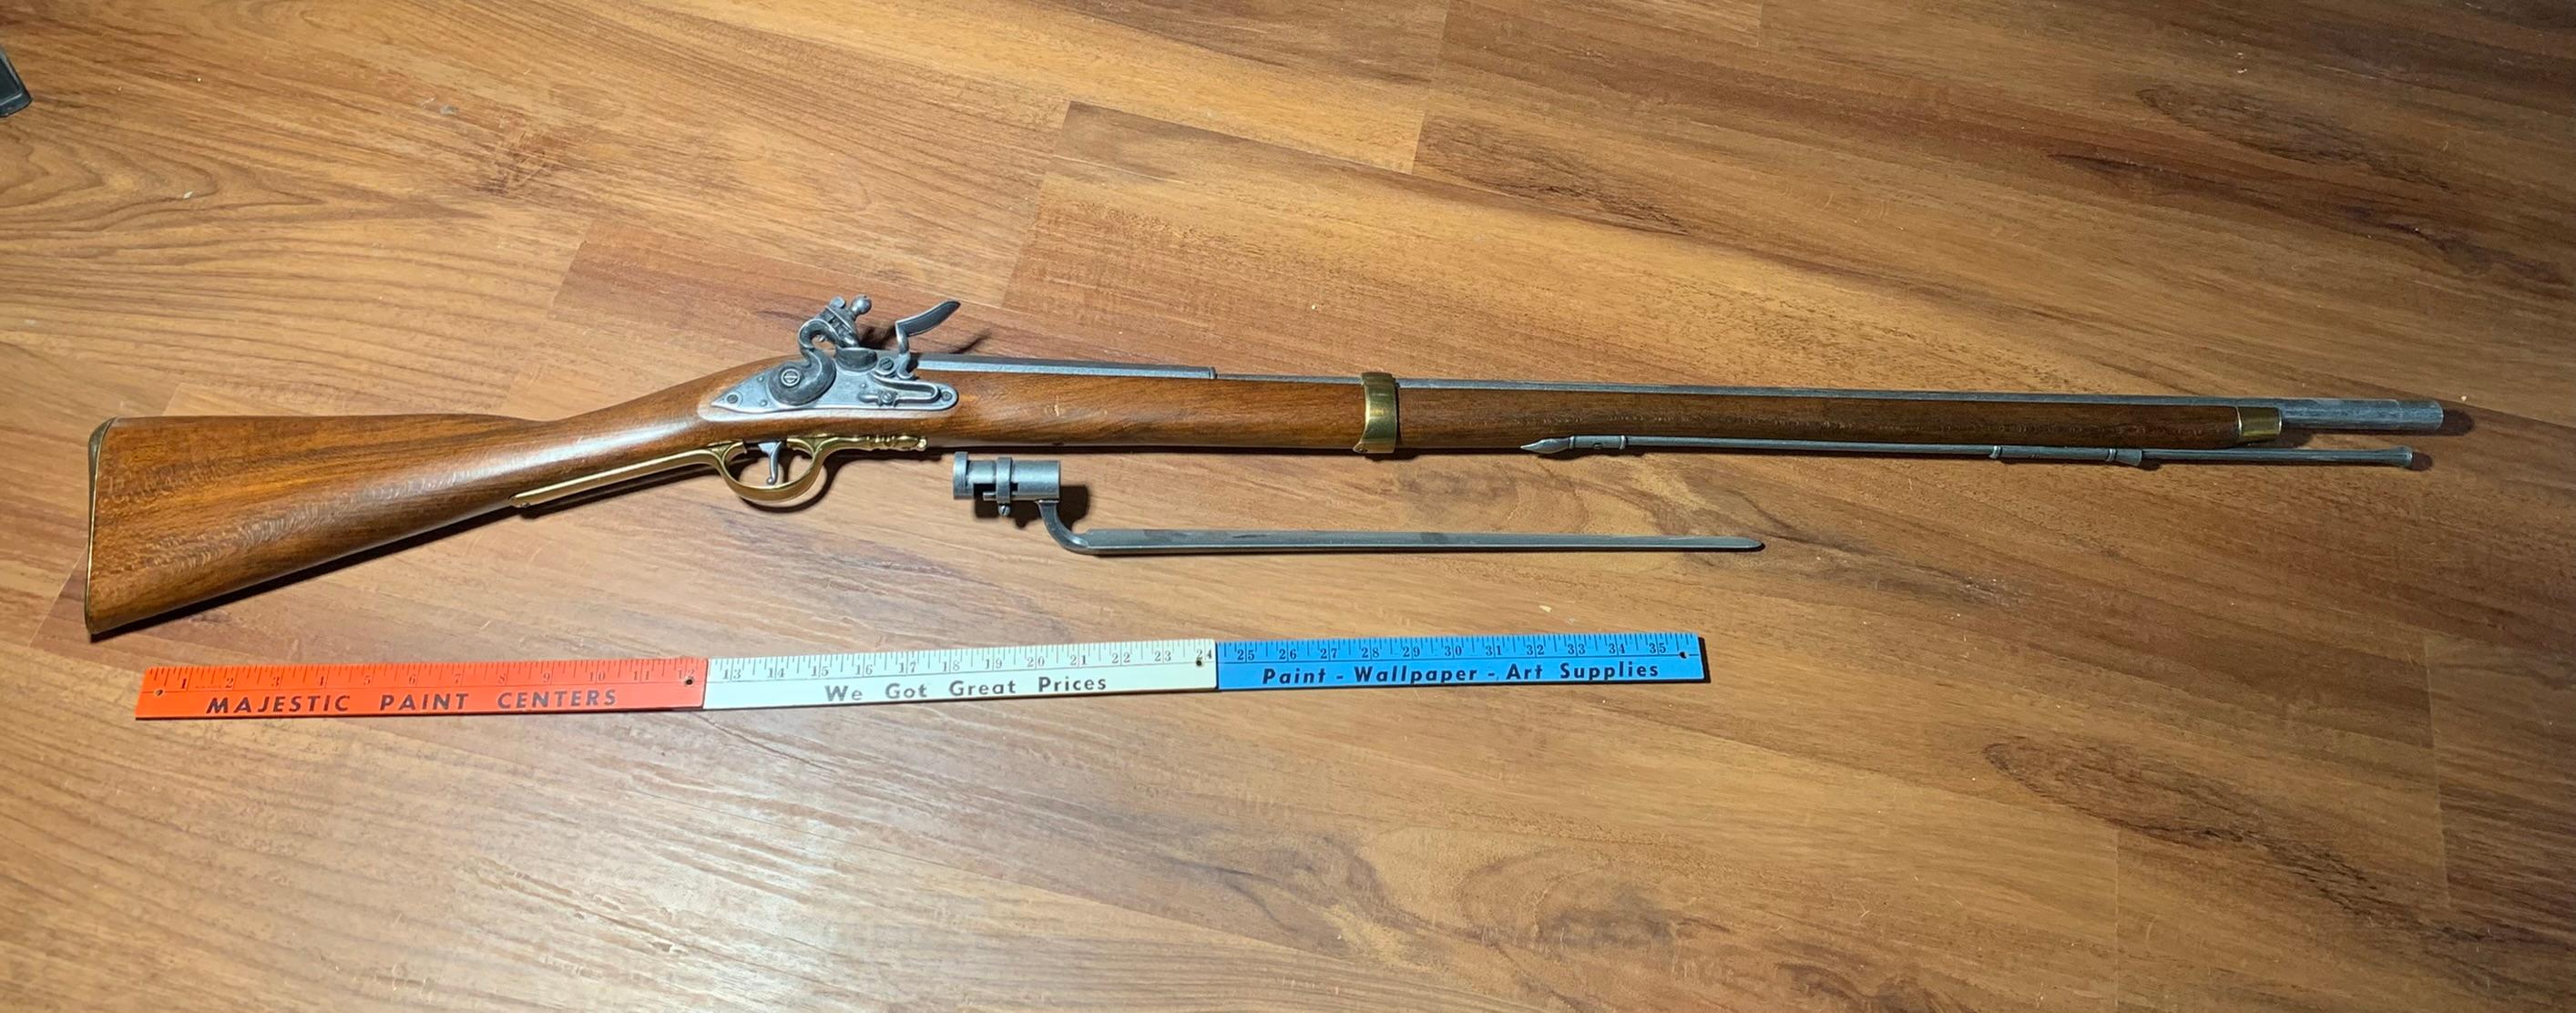 Replica Flintlock Pistol & Long Rifle